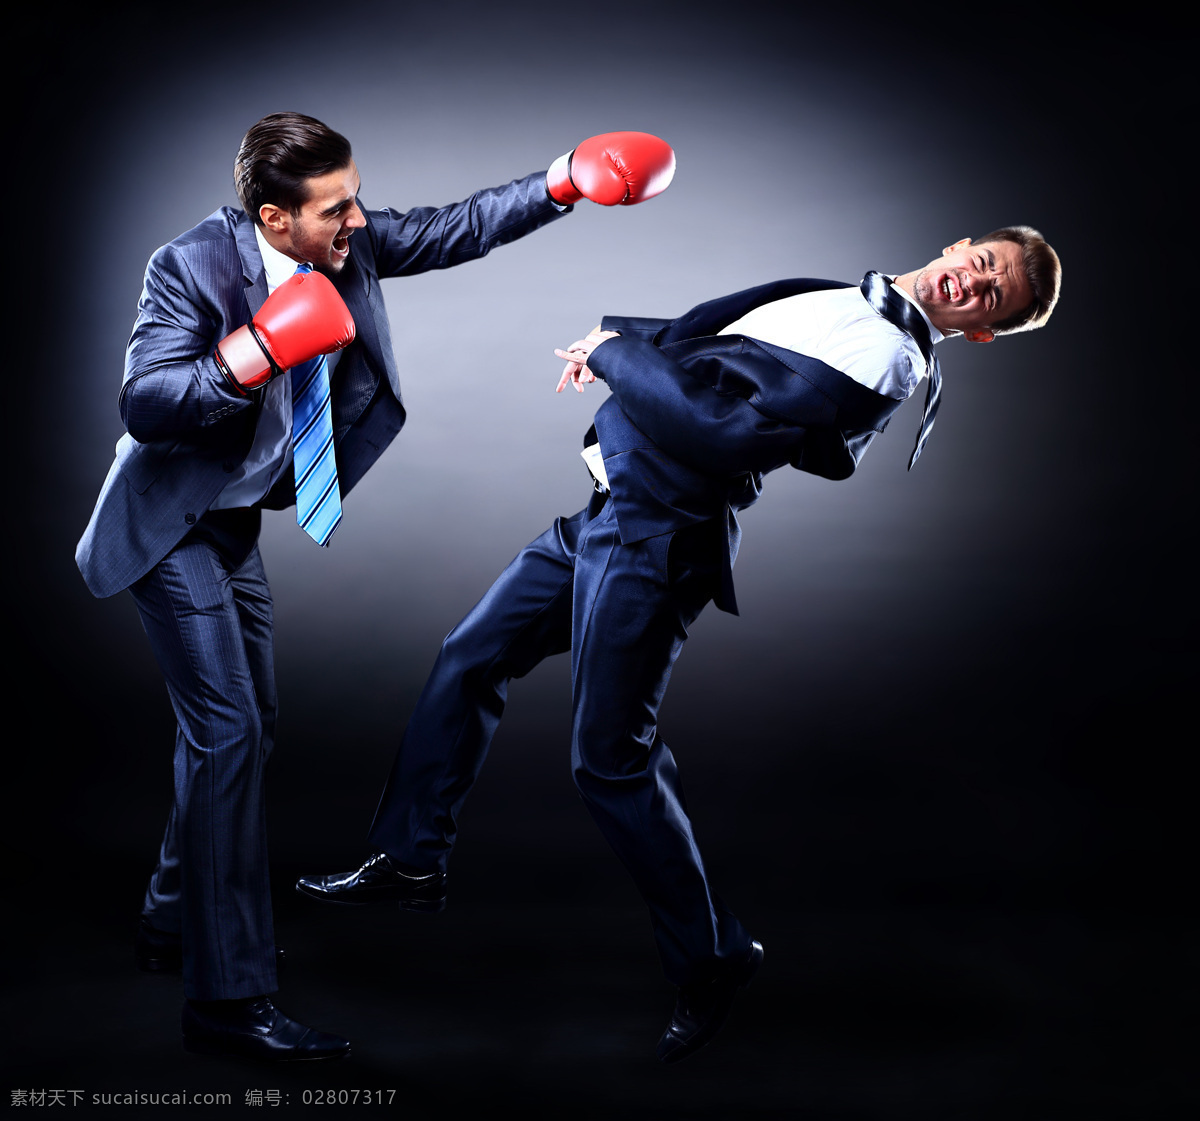 打拳 击 两个 外国 男人 外国人物 运动 拳击 现代商务 商务金融